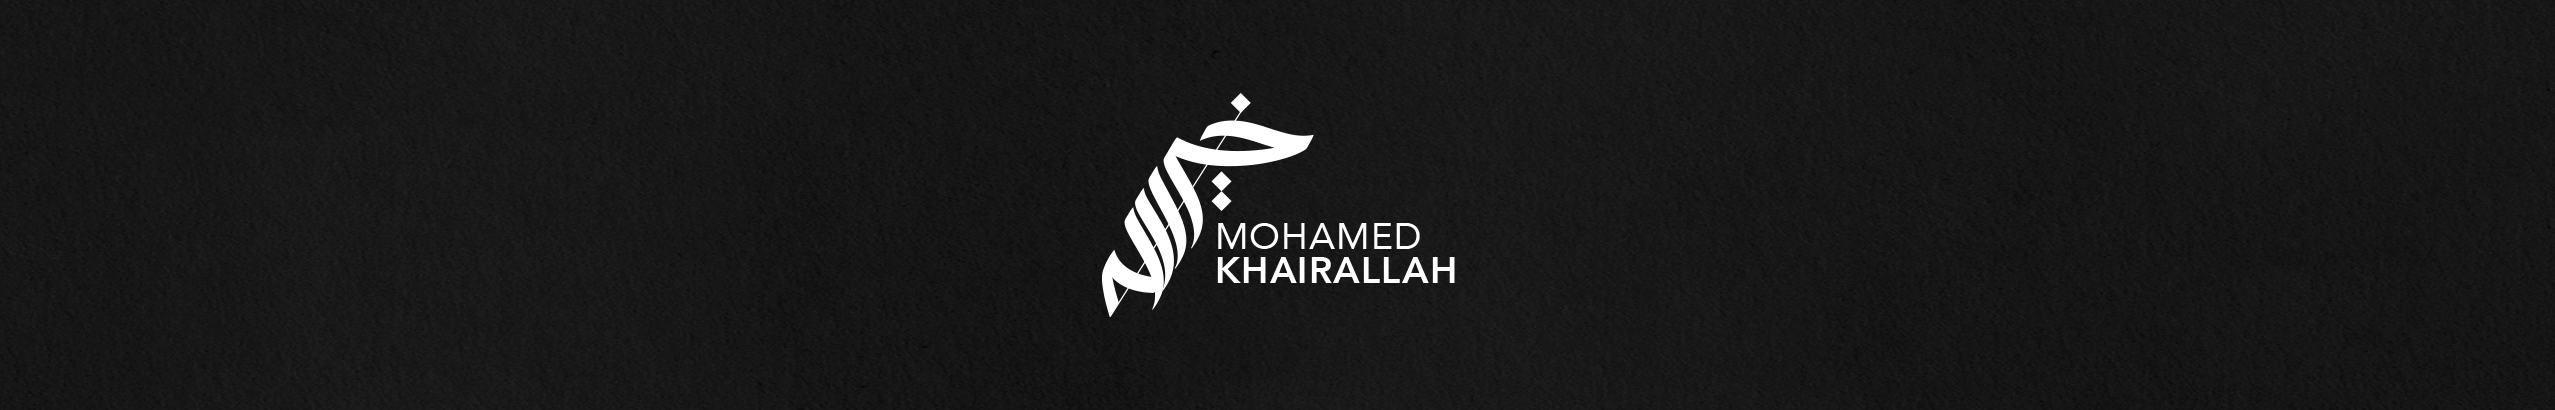 Mohamed Khairallah's profile banner